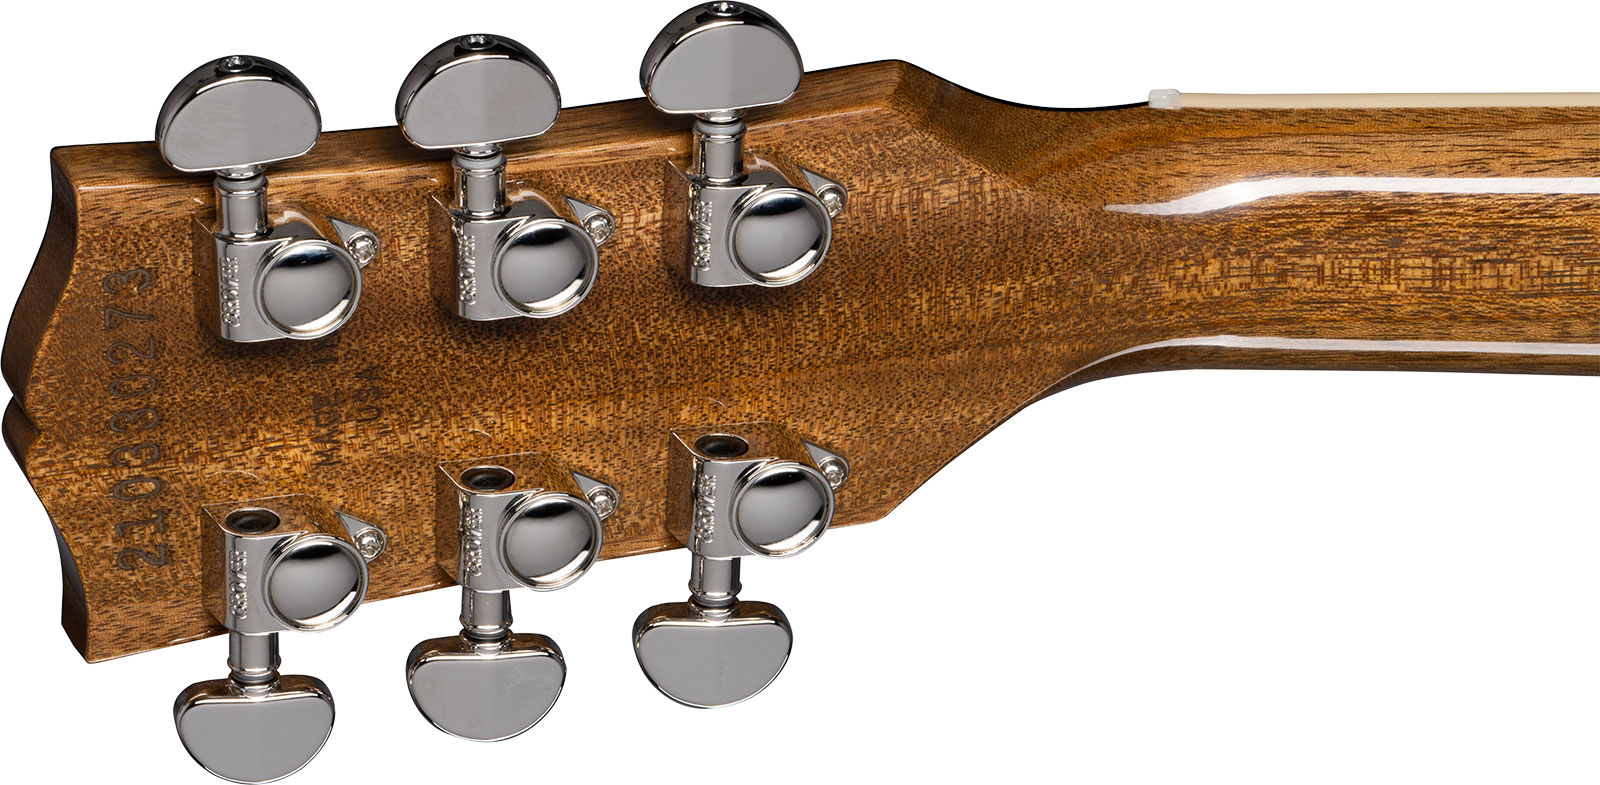 Gibson Les Paul Standard 60s Plain Top 2h Ht Rw - Classic White - Guitarra eléctrica de corte único. - Variation 4